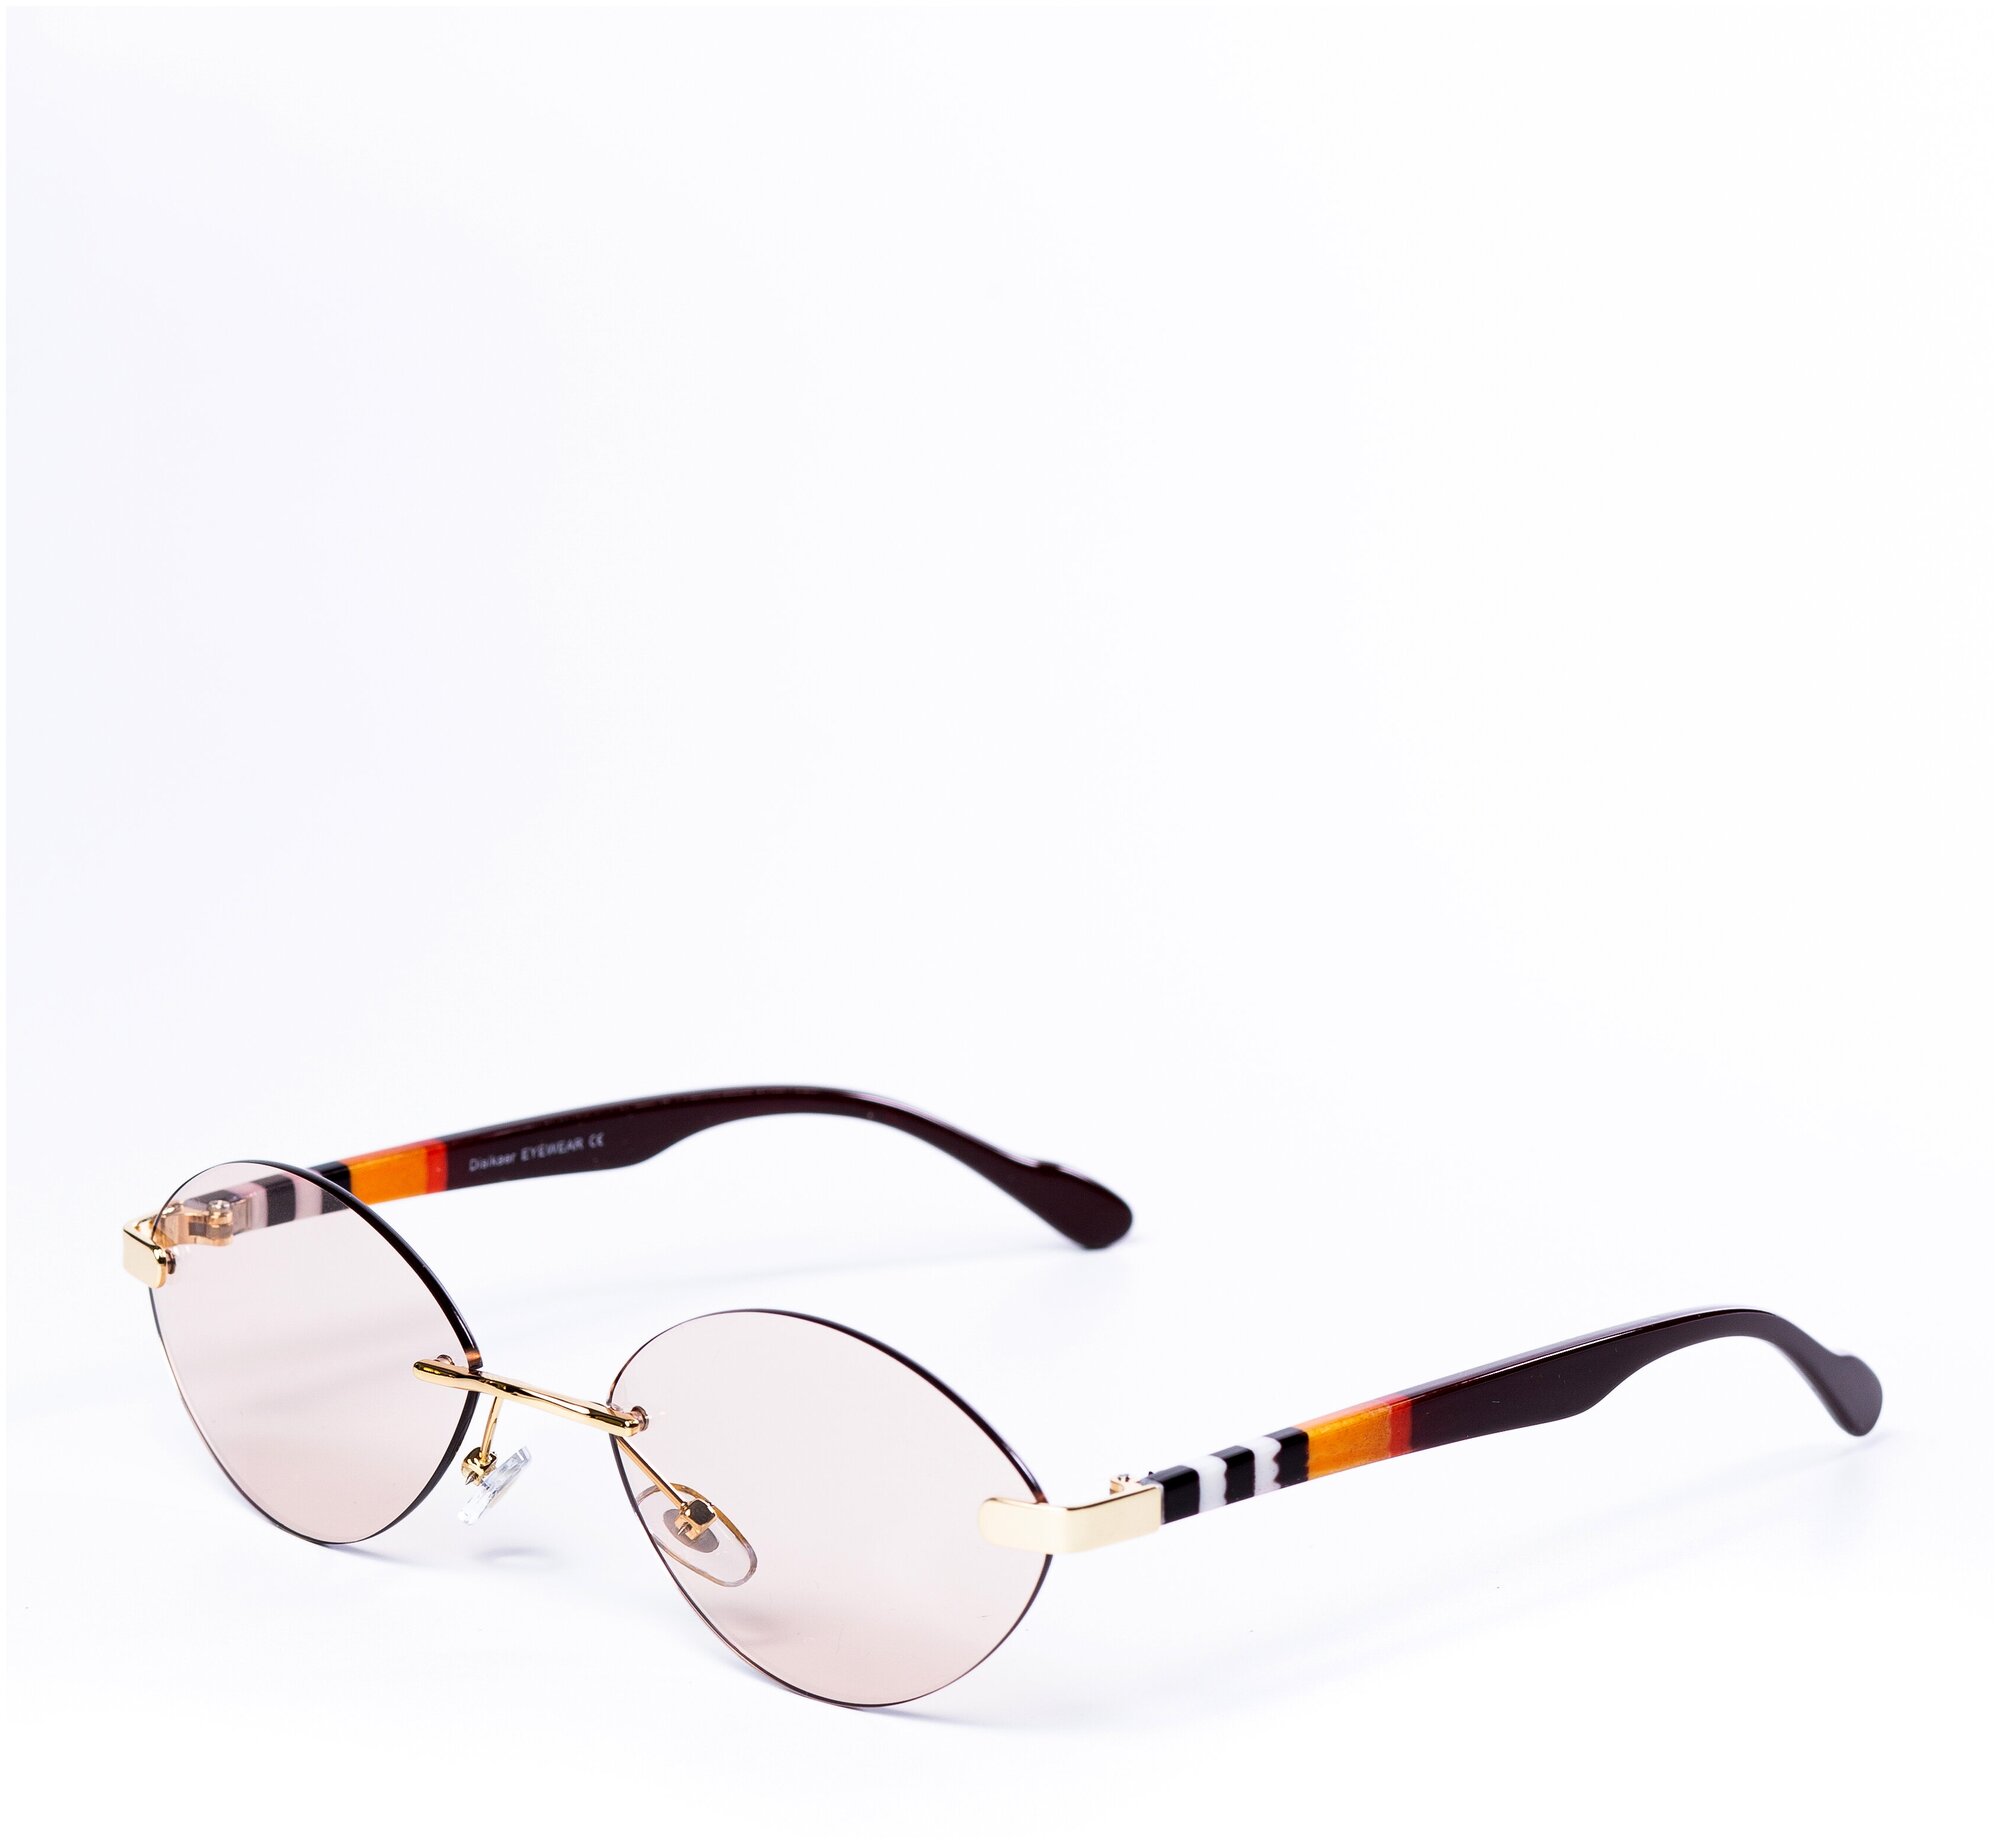 Солнцезащитные очки женские / Оправа «кошачий глаз» / Стильные очки / Ультрафиолетовый фильтр / Защита UV400 / Чехол в подарок /Темные очки 200422514